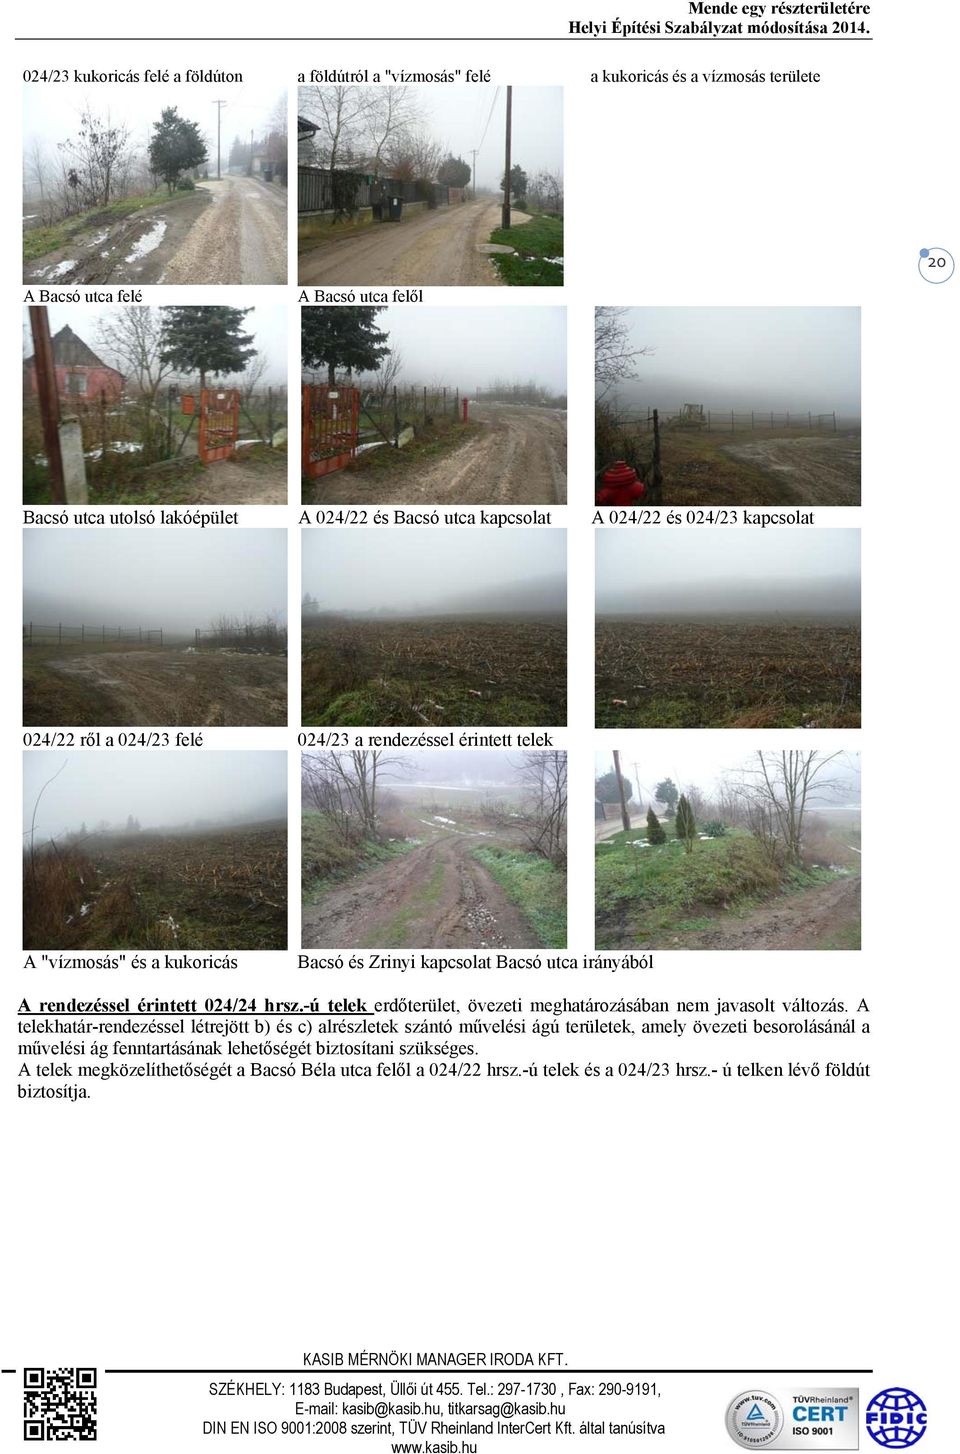 érintett 024/24 hrsz.-ú telek erdőterület, övezeti meghatározásában nem javasolt változás.